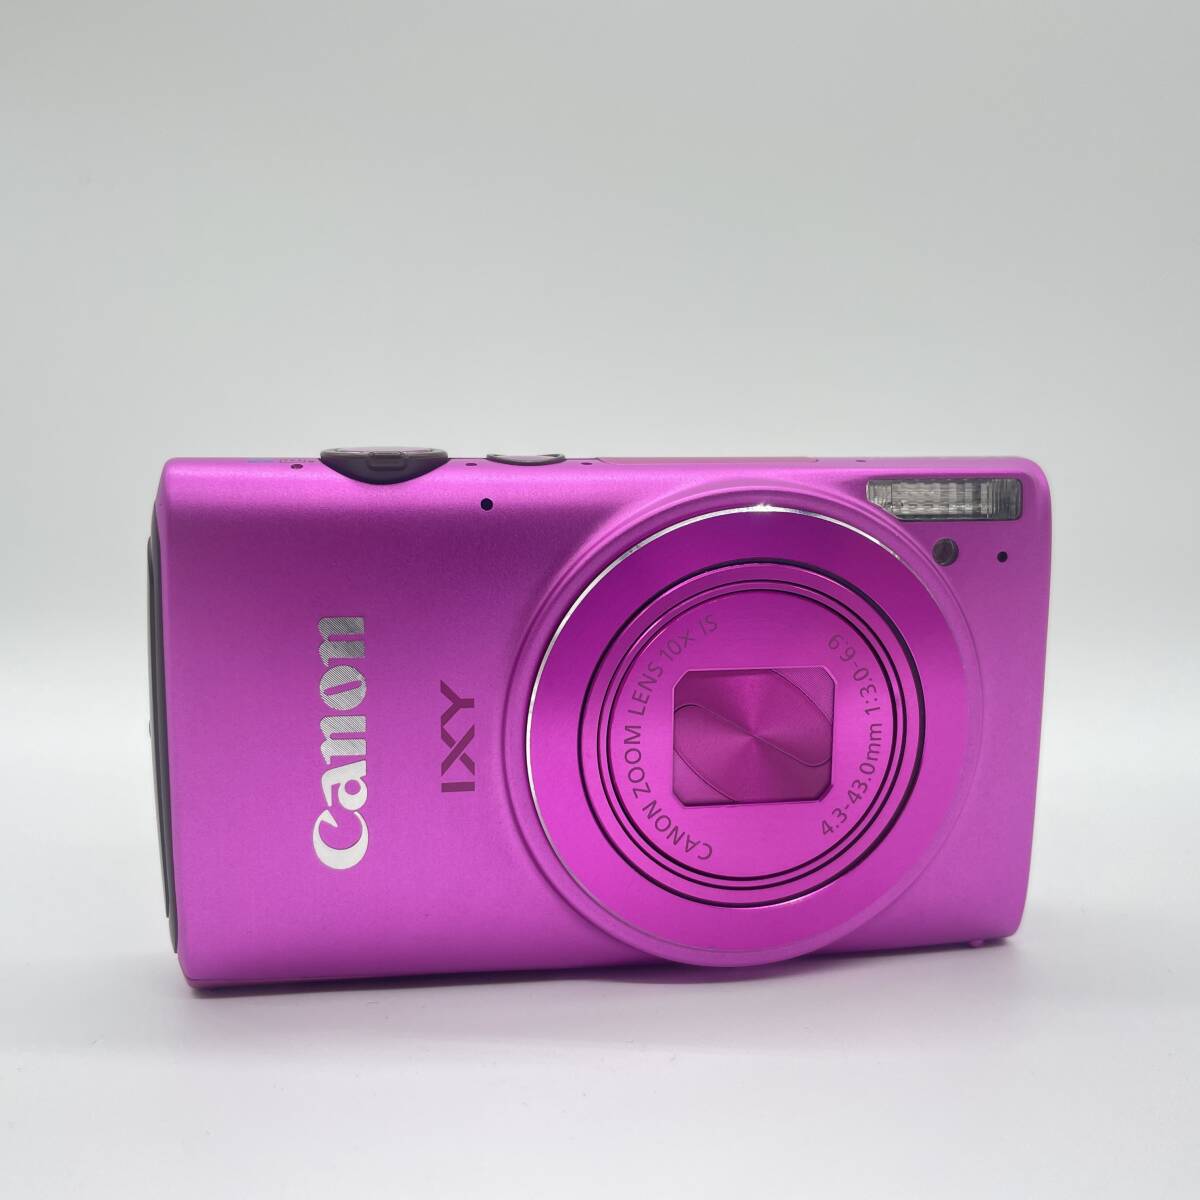 【動作確認済み】Canon IXY 610F PINK コンデジ デジカメ デジタルカメラ シャッター&フラッシュ動作OKの画像4